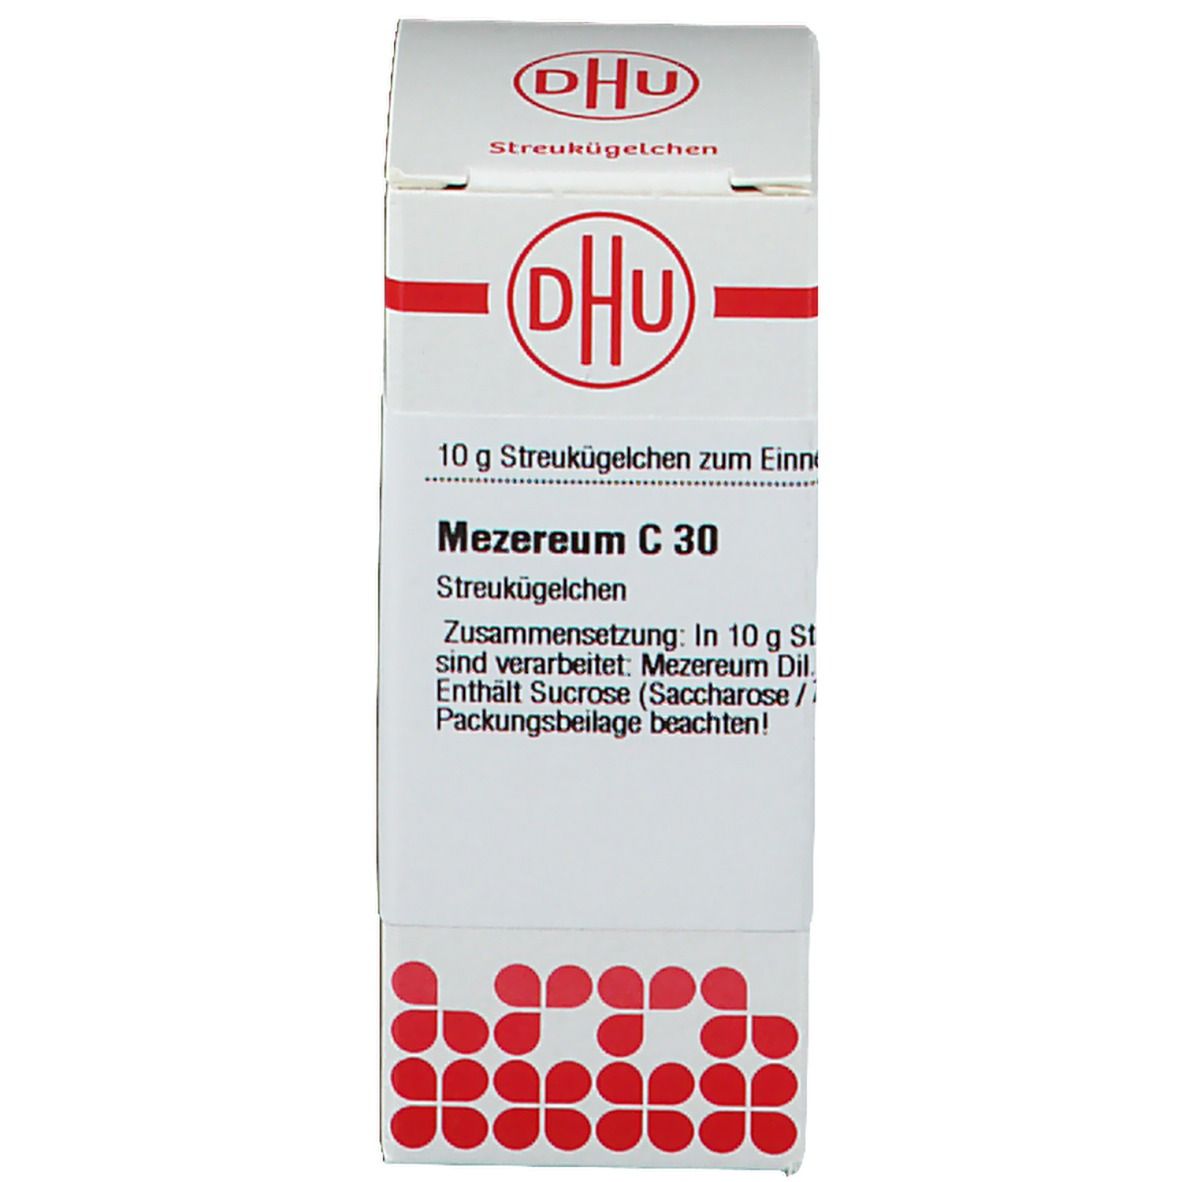 DHU Merzereum C30